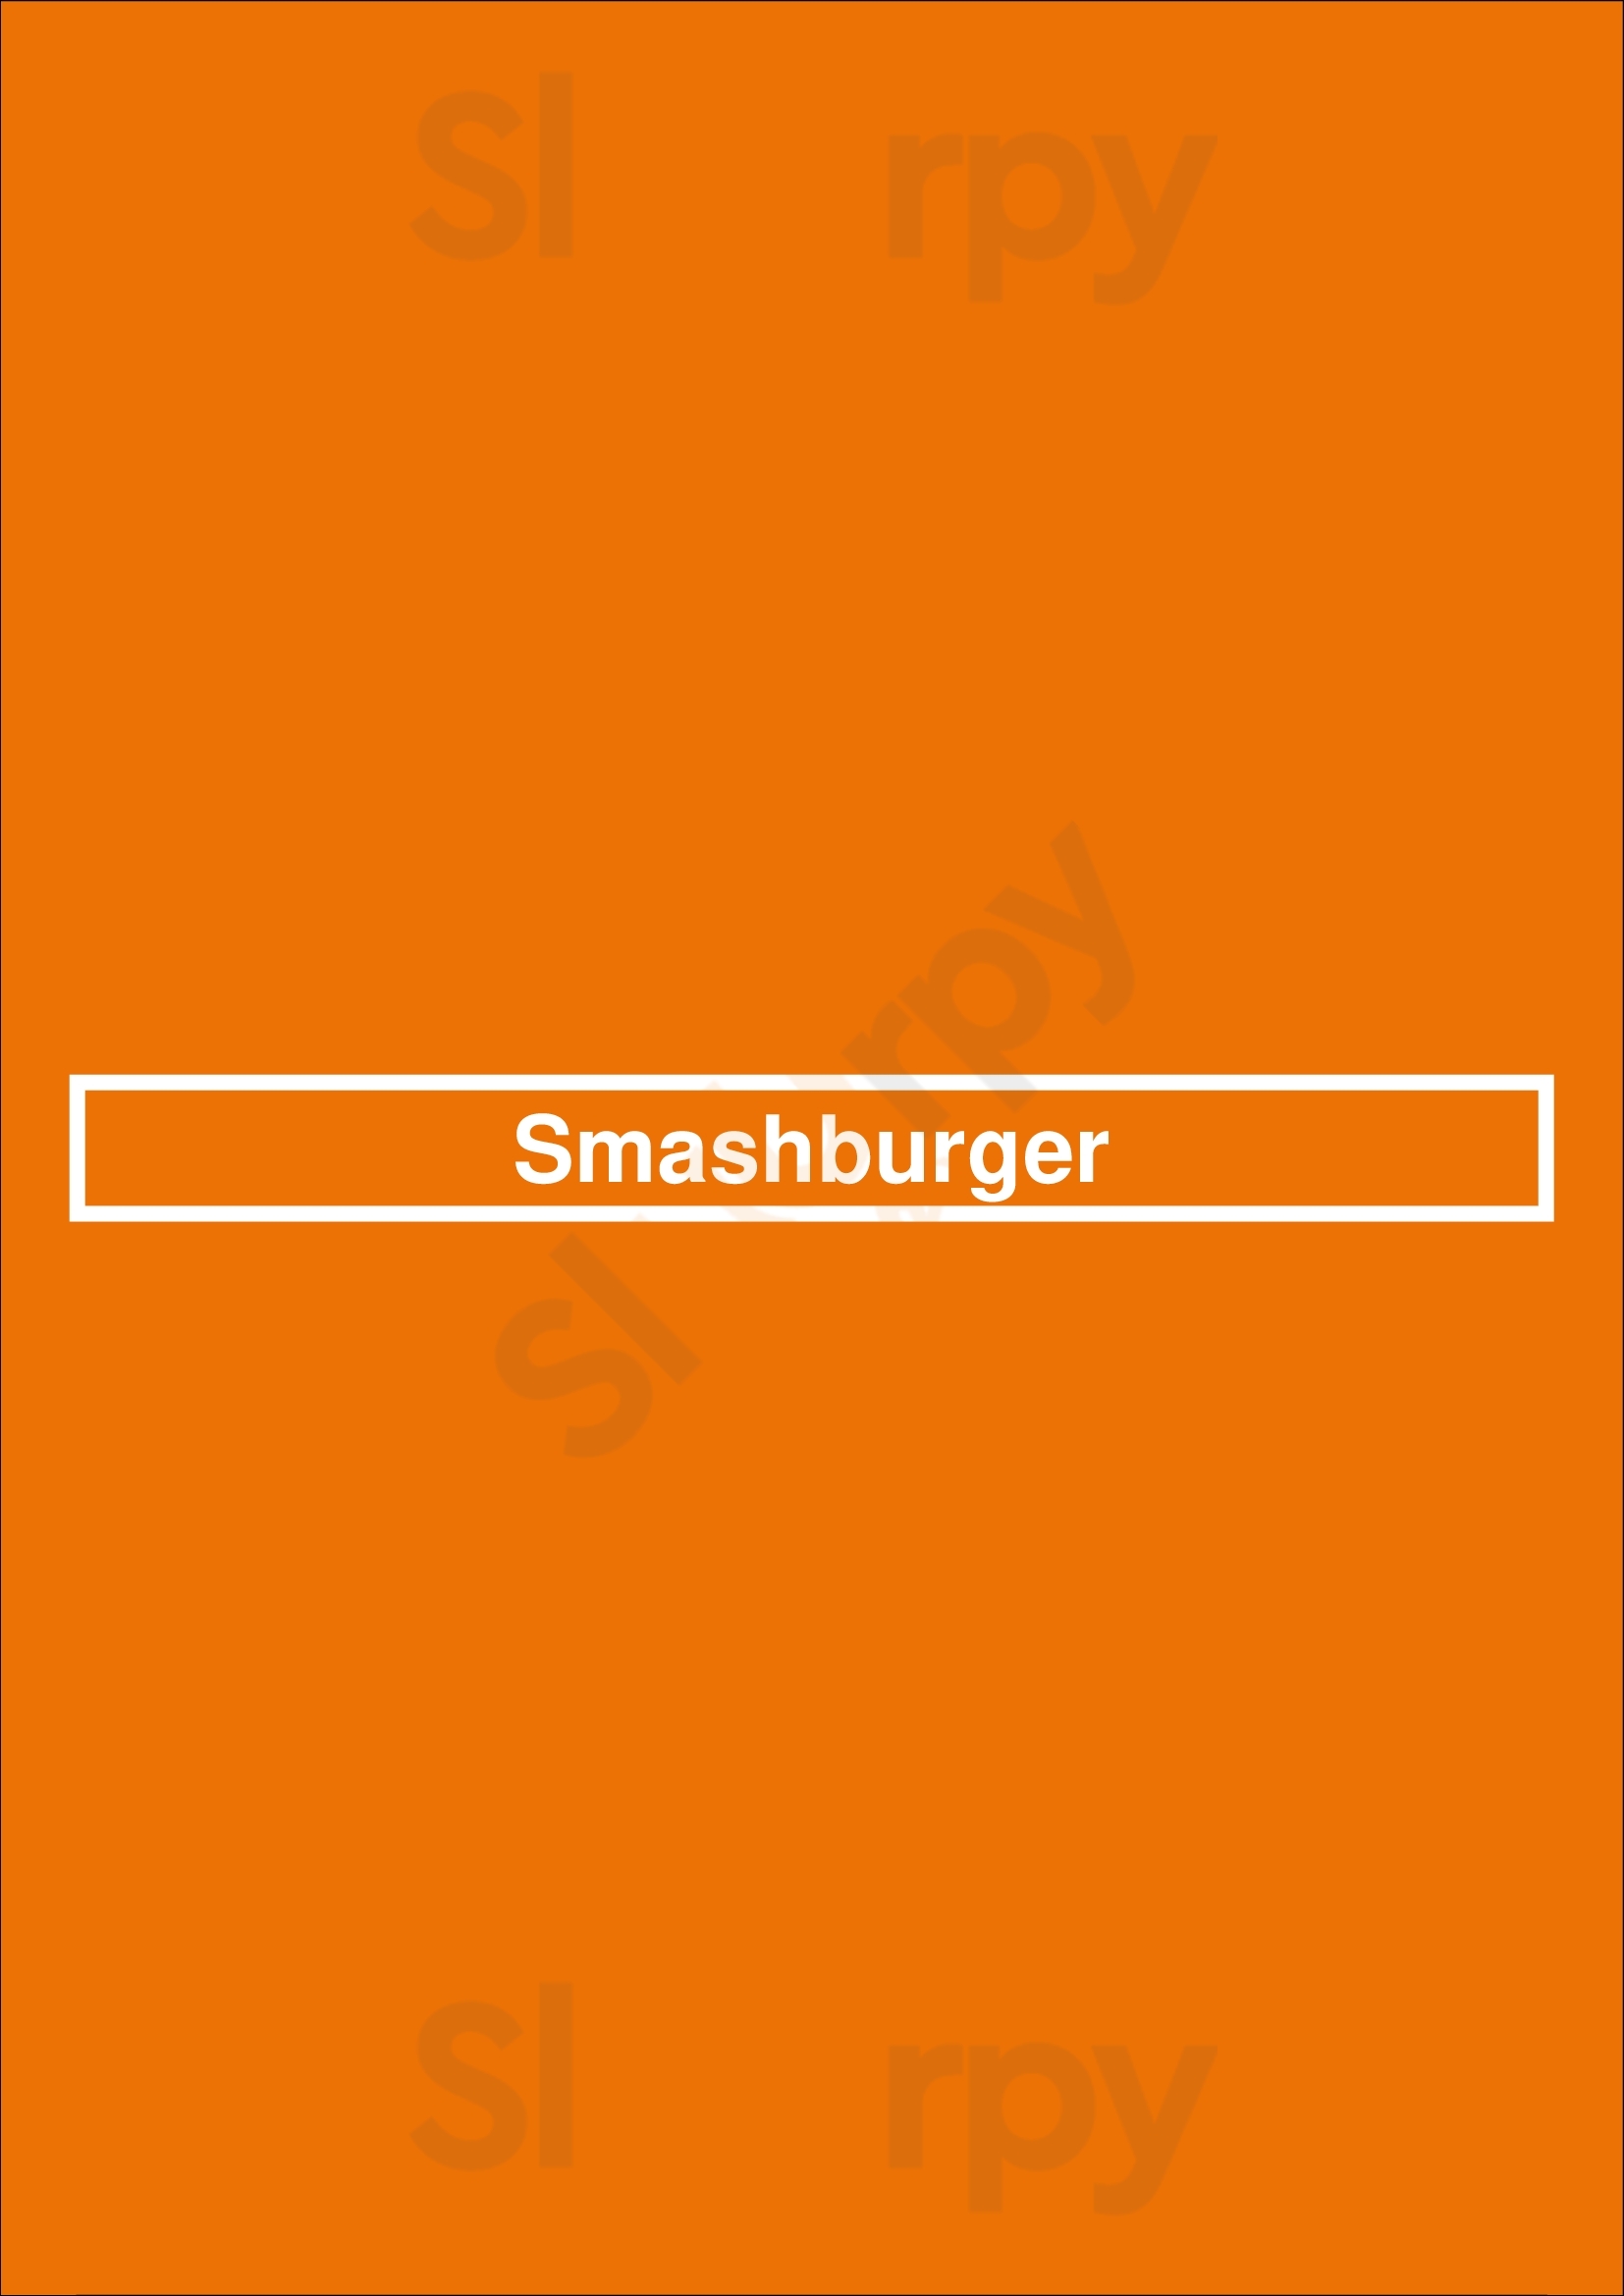 Smashburger San Jose Menu - 1